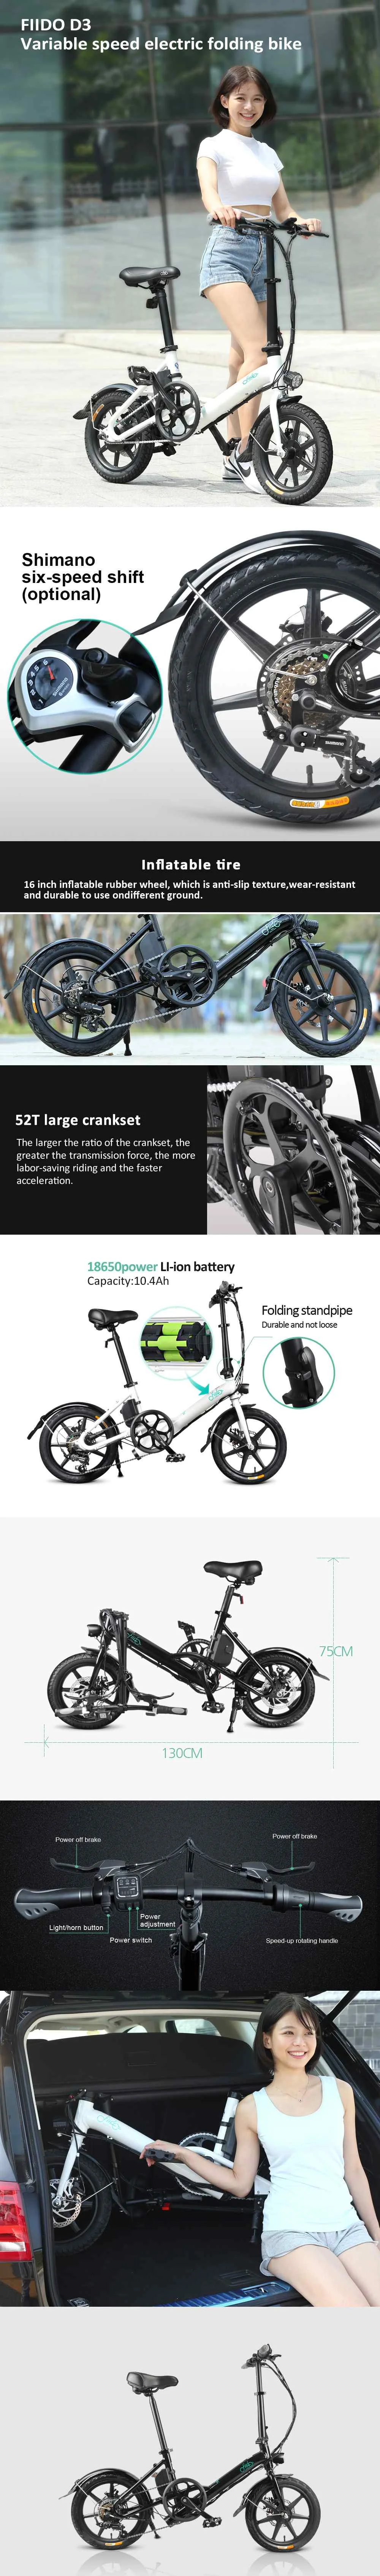 [EU Direct] FIIDO D3S сменная версия 36 В 7.8Ah 300 Вт 16 дюймов складной мопед Электрический велосипед 25 км/ч Макс 60 км